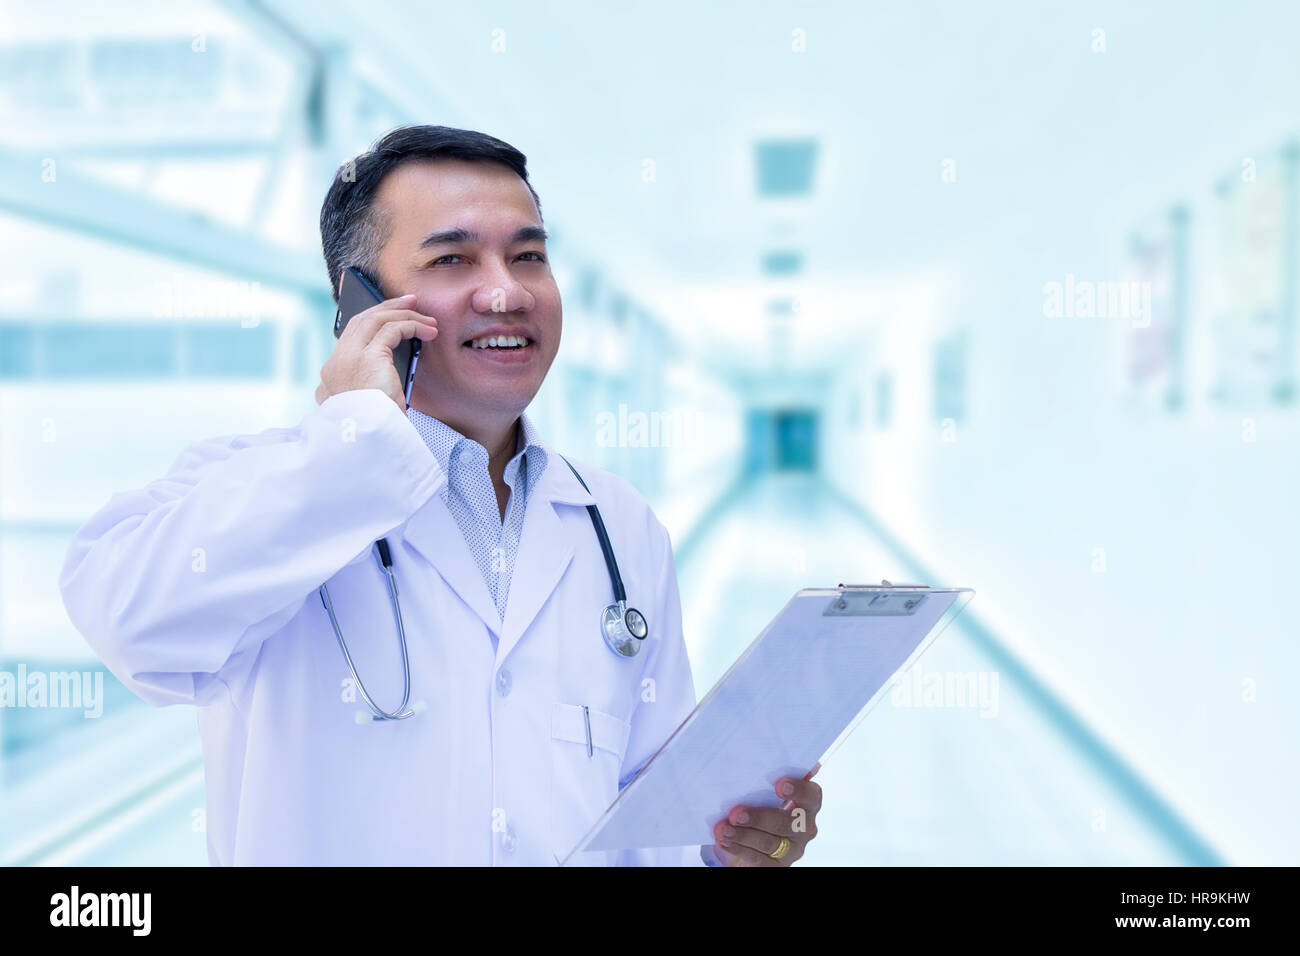 Médecin homme asiatique avec un sourire heureux en utilisant un smartphone sur fond blanc floue Banque D'Images